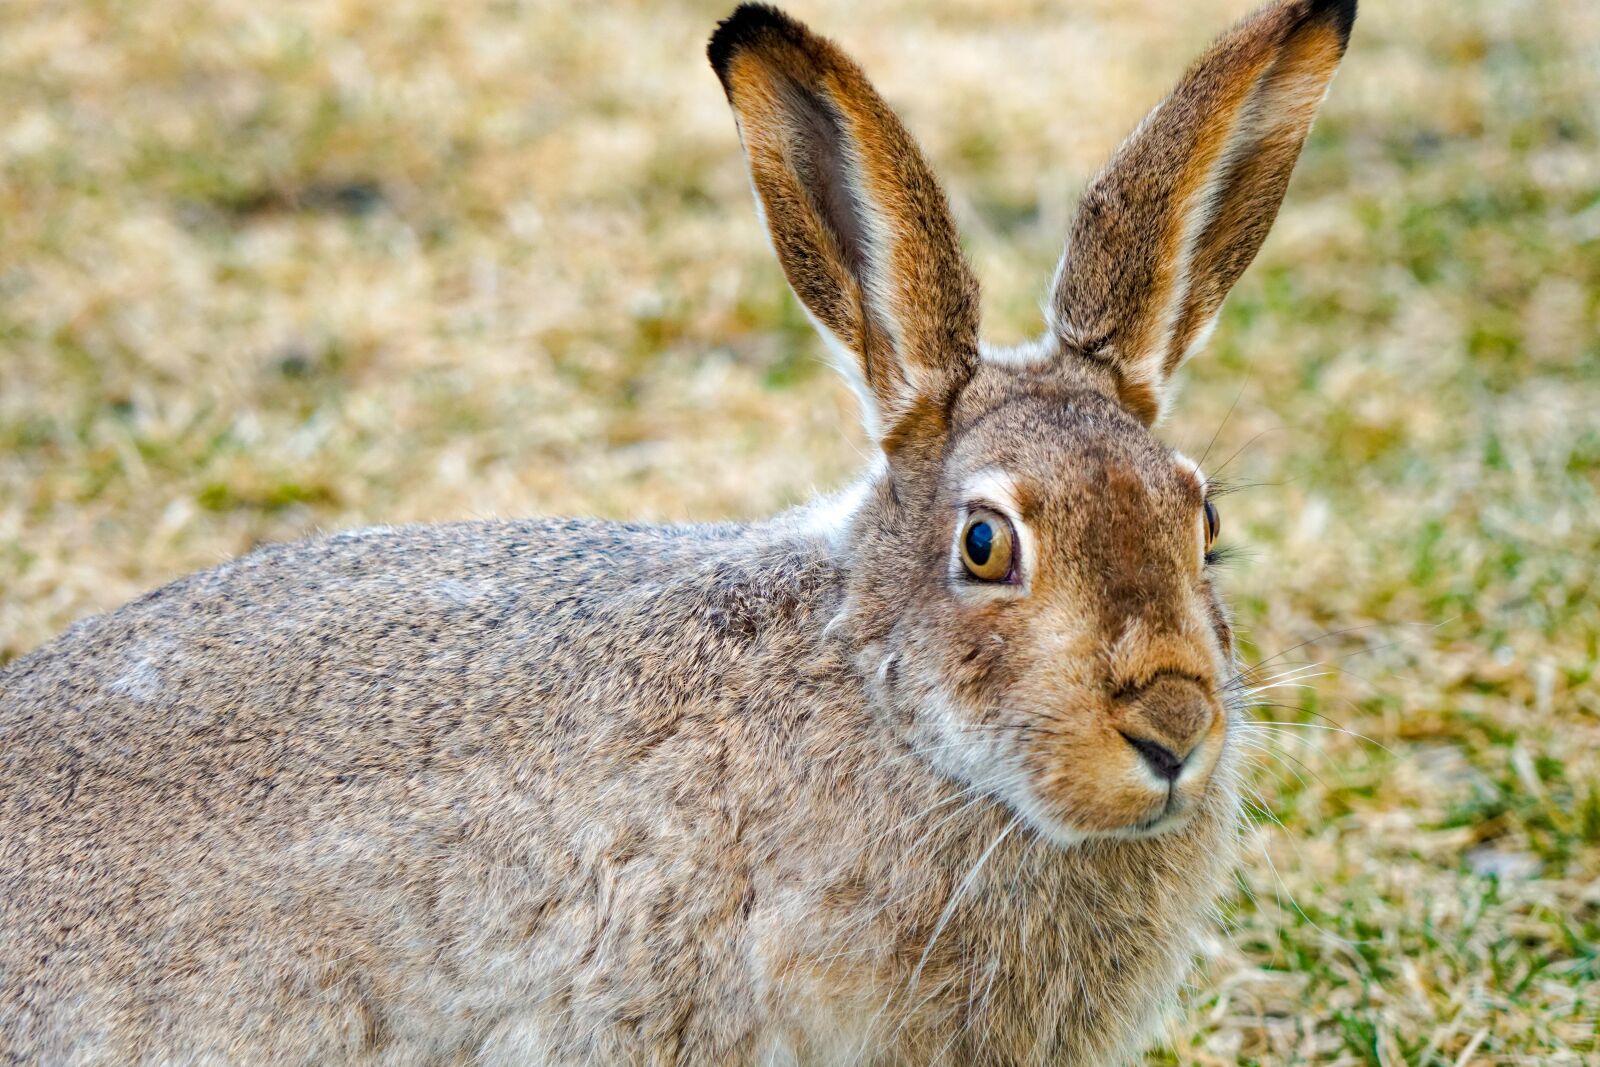 Sony a6500 sample photo. Jackrabbit, hare, rabbit photography